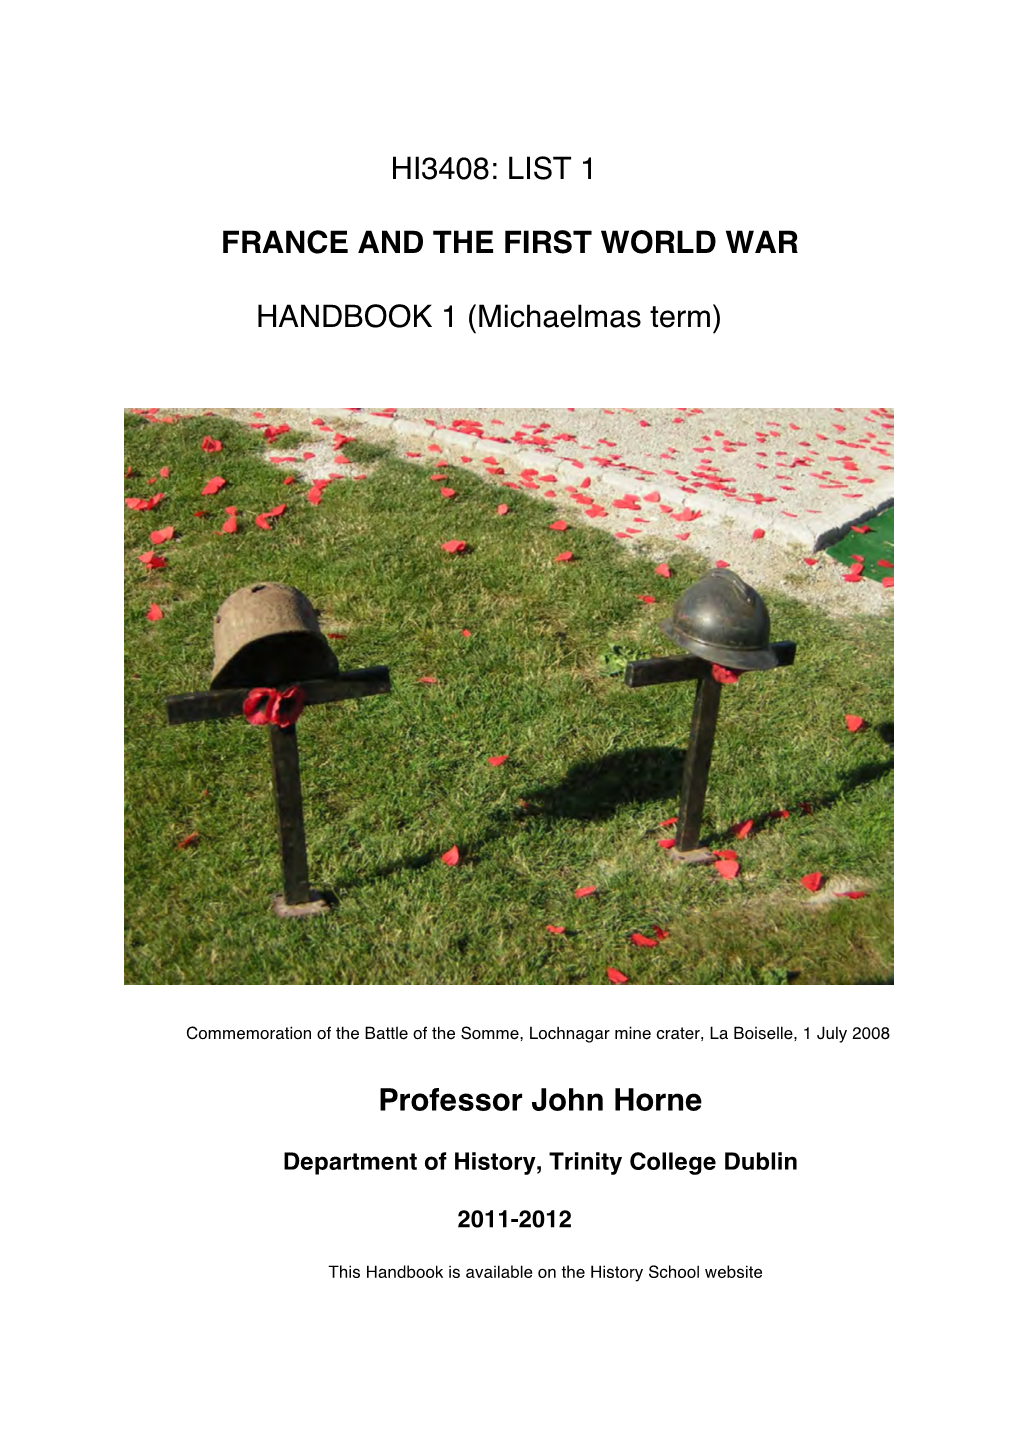 List 1 France and the First World War Handbook 1